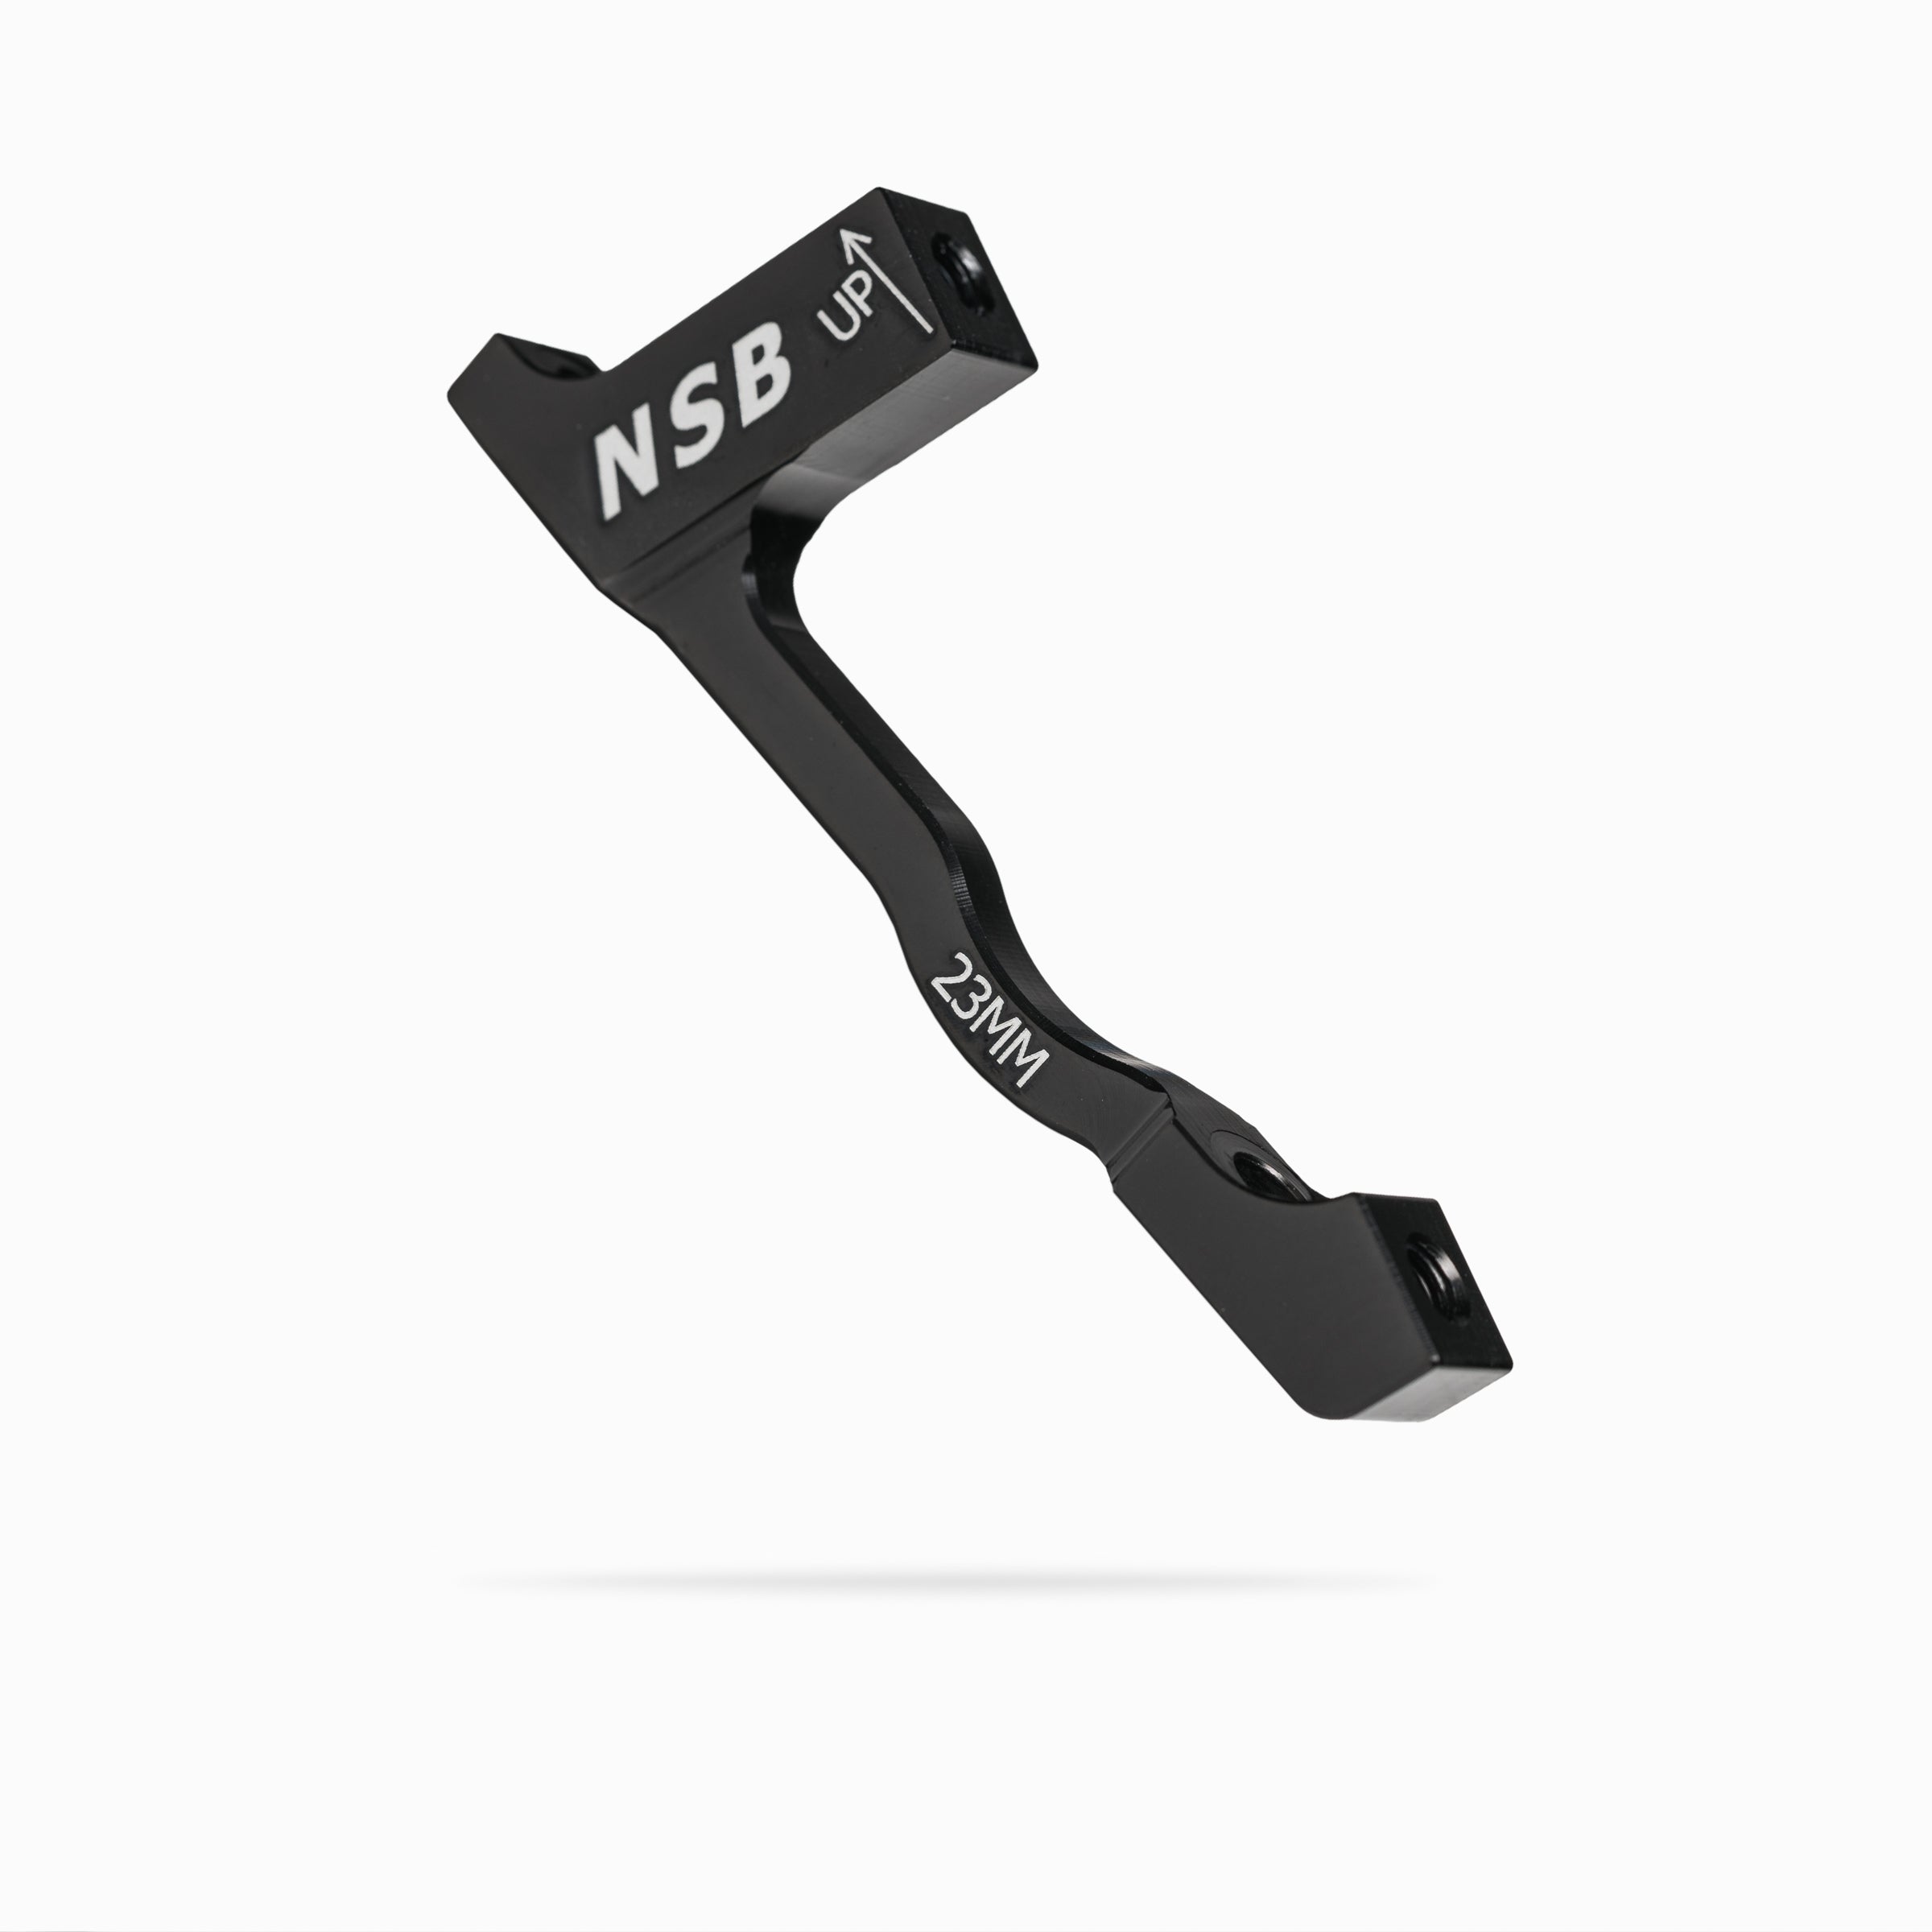 North Shore Billet 23mm post mount brake adapter black colour